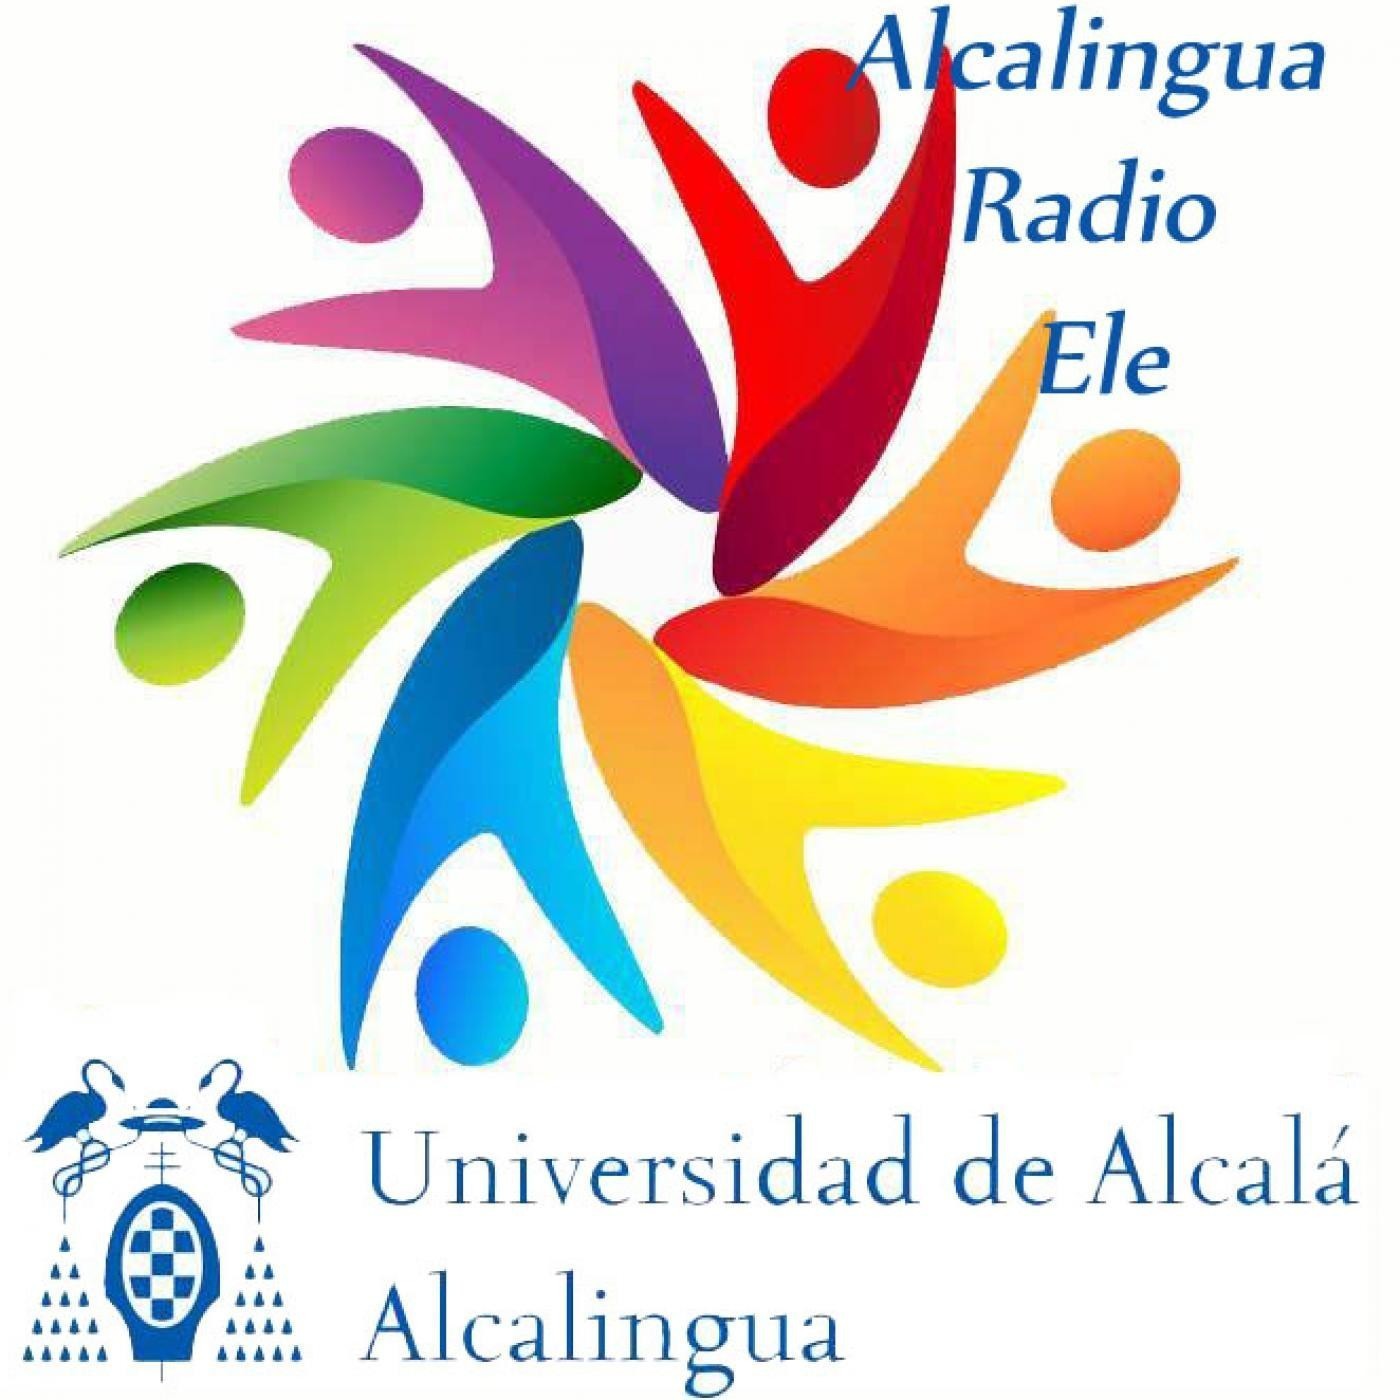 ALCALINGUA RADIO ELE - APRENDE A